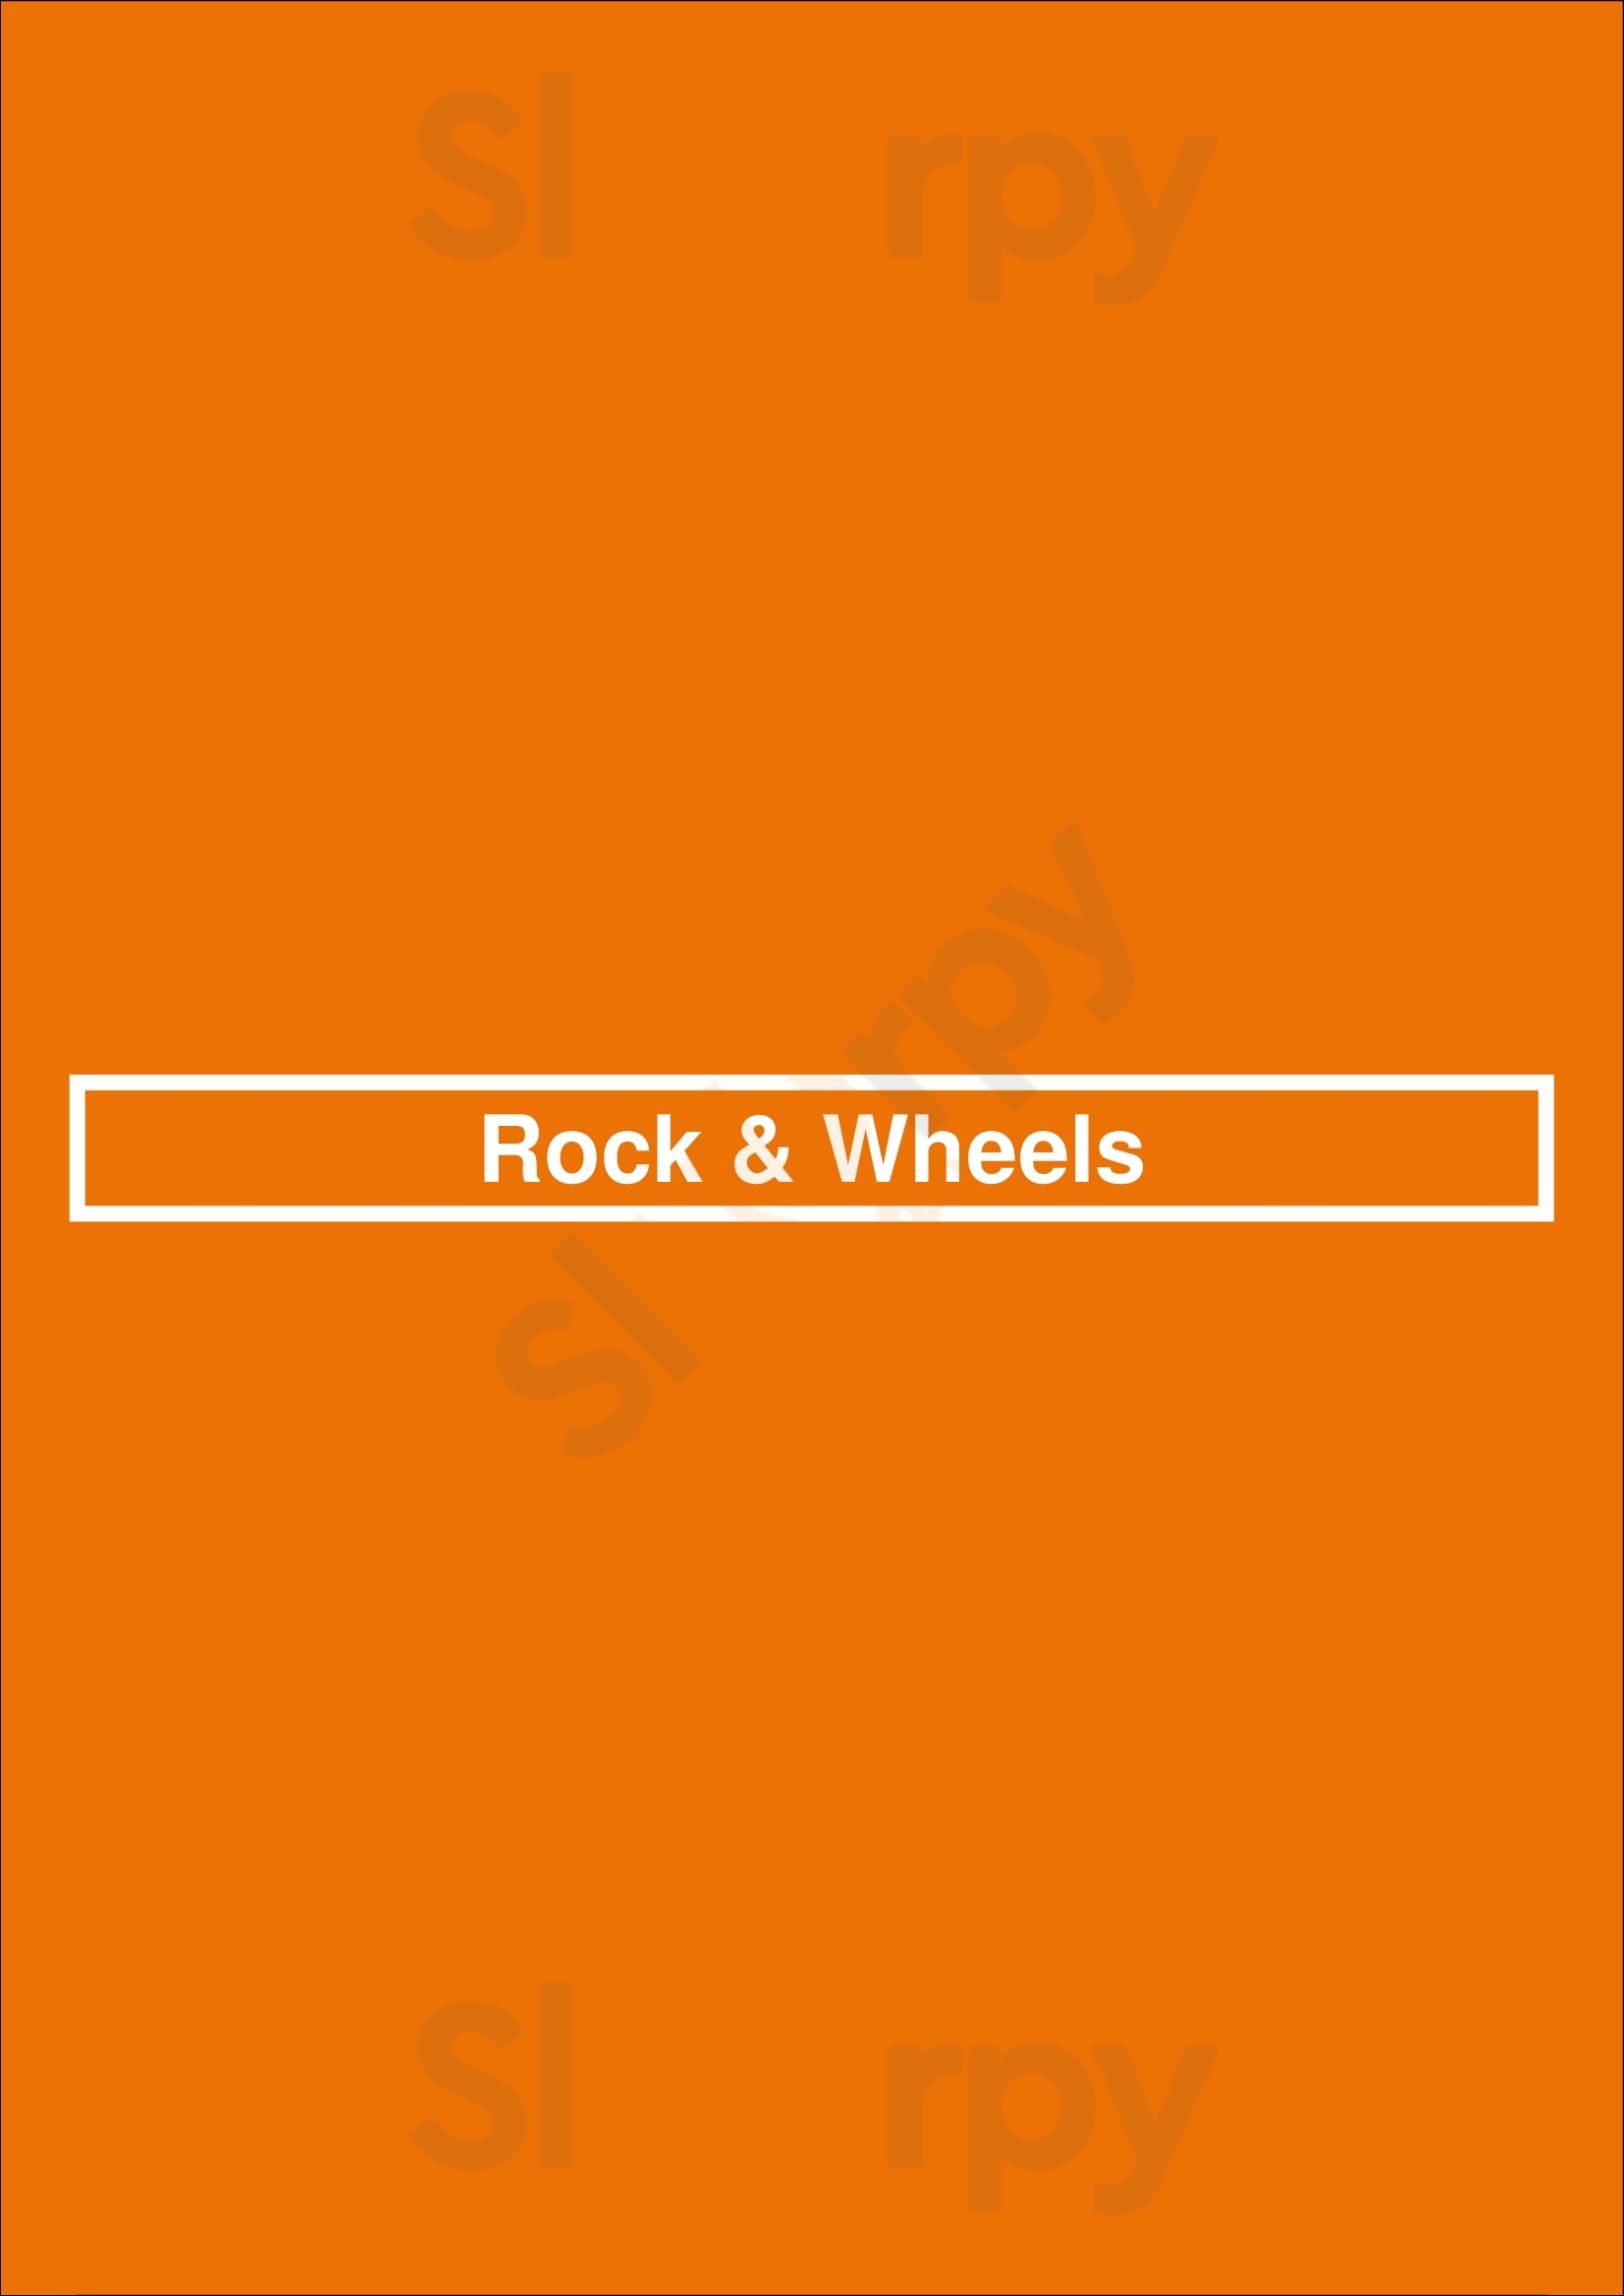 Rock & Wheels Chiclana de la Frontera Menu - 1